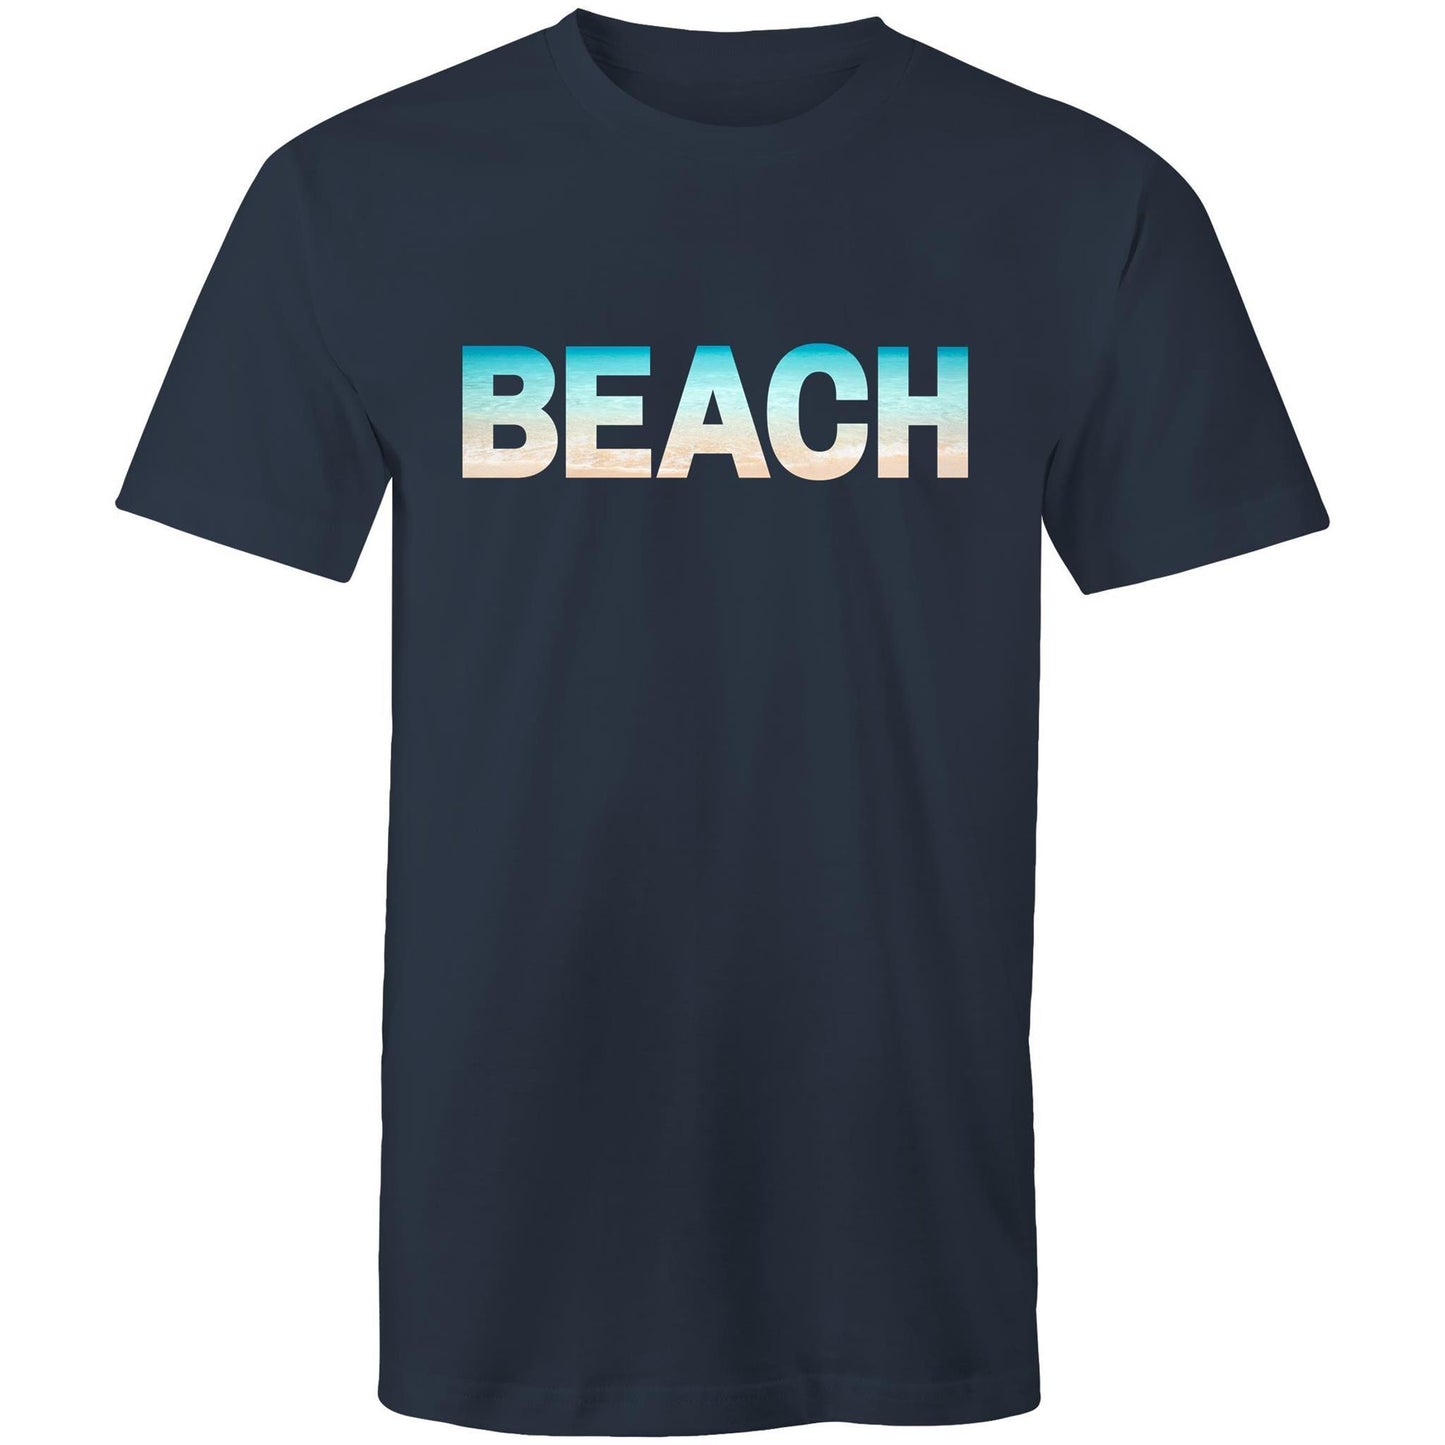 Beach - Mens T-Shirt Navy Mens T-shirt Mens Summer